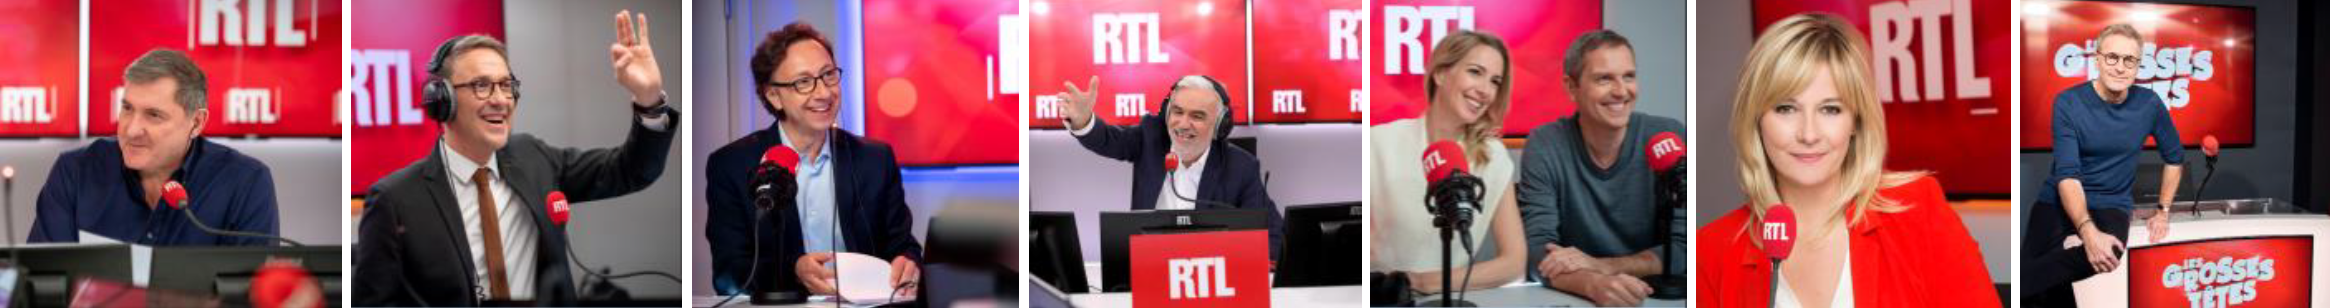 Ce vendredi, RTL fête la musique, de 9h à 18h